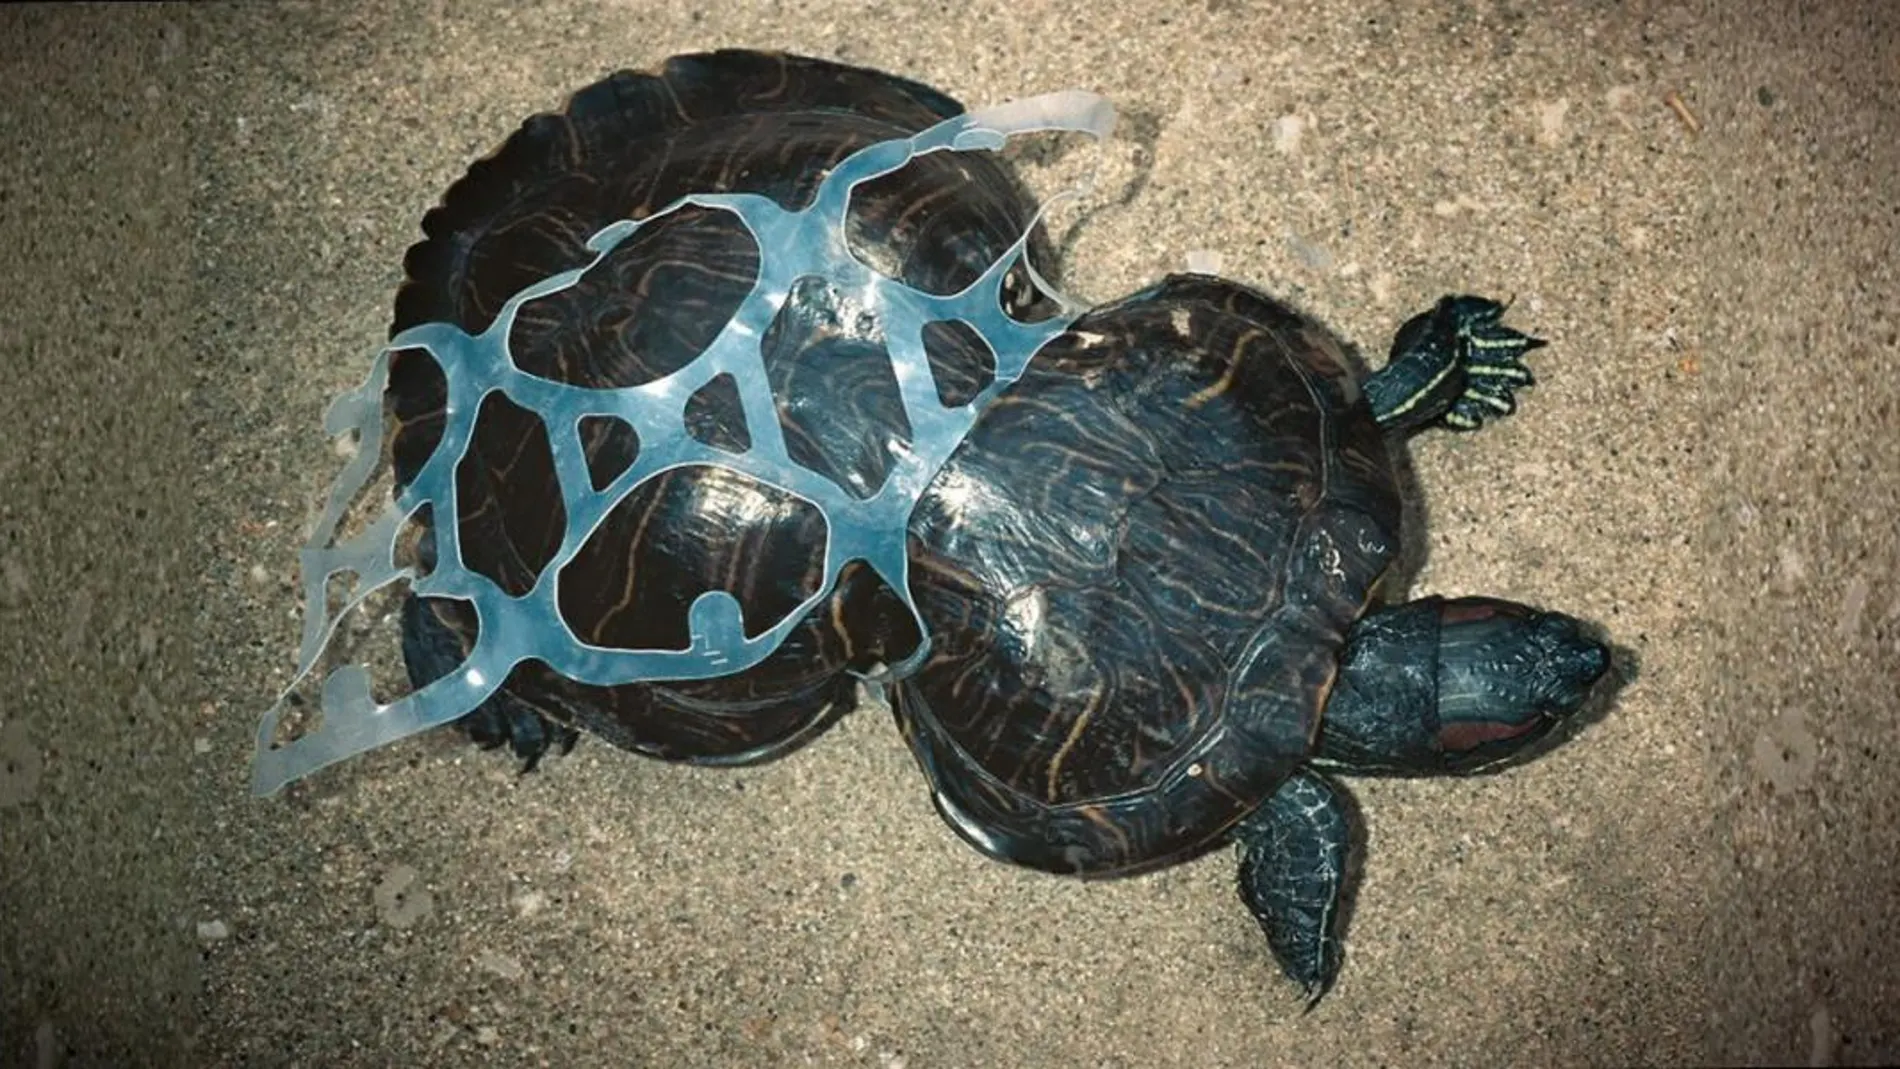 Fotografía cedida, sin fecha, que muestra una tortuga atrapada por los anillos plásticos tradicionales de los paquetes de seis cervezas, que no son biodegradables